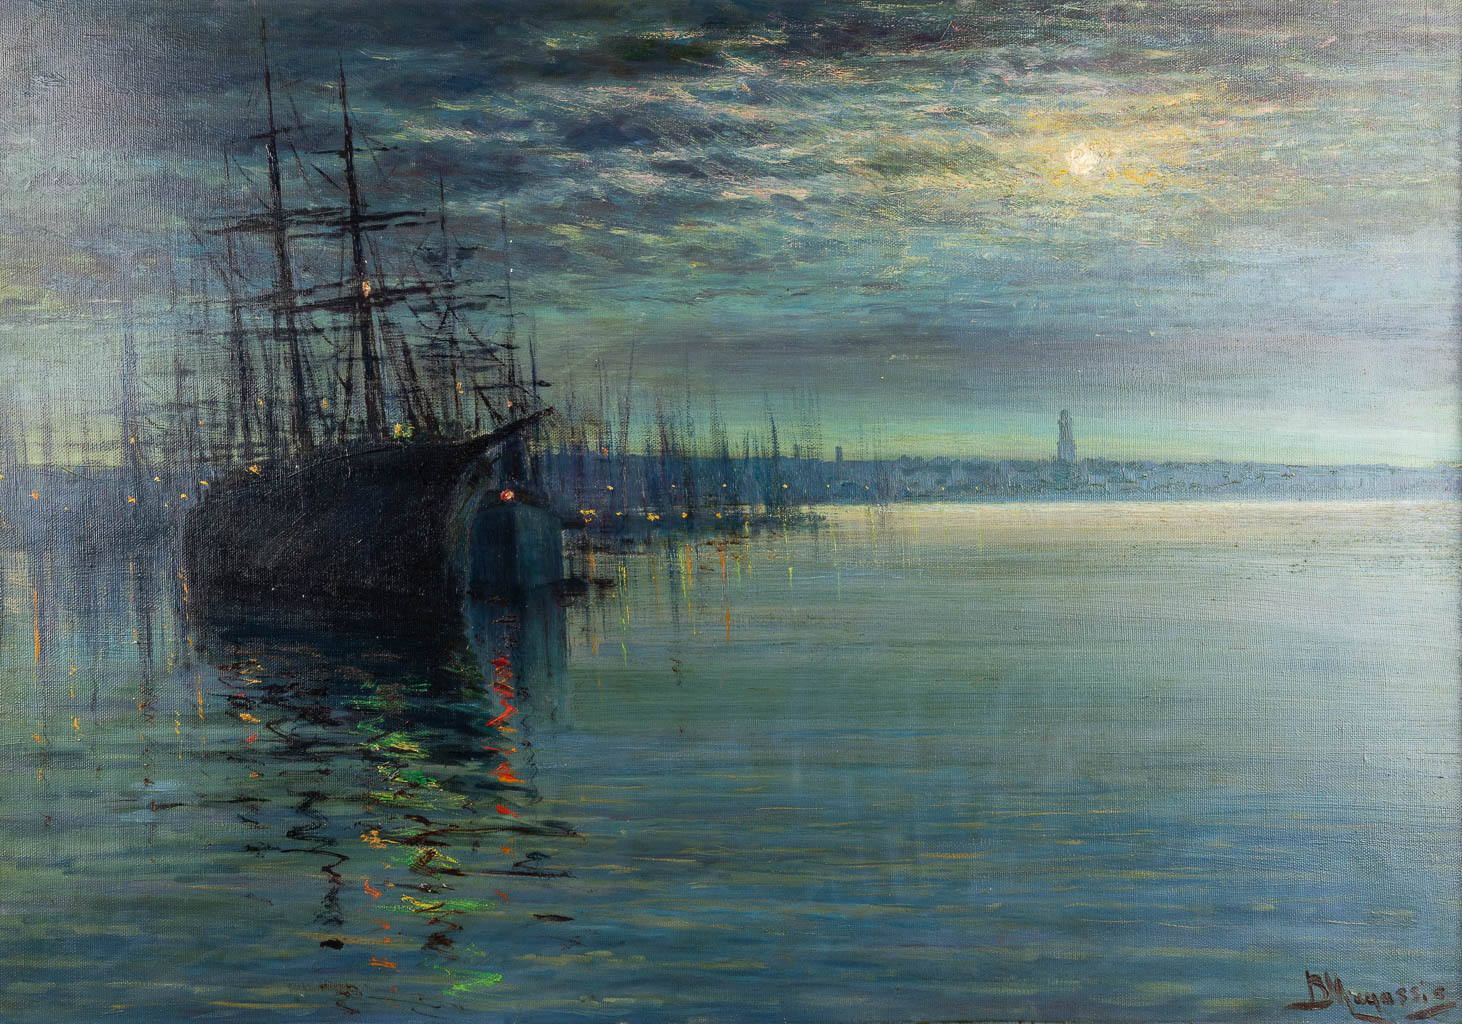 Vassilis MAGIASSIS (1880-1926) 'Harbor view' oil on canvas. (W:100 x H:70 cm)